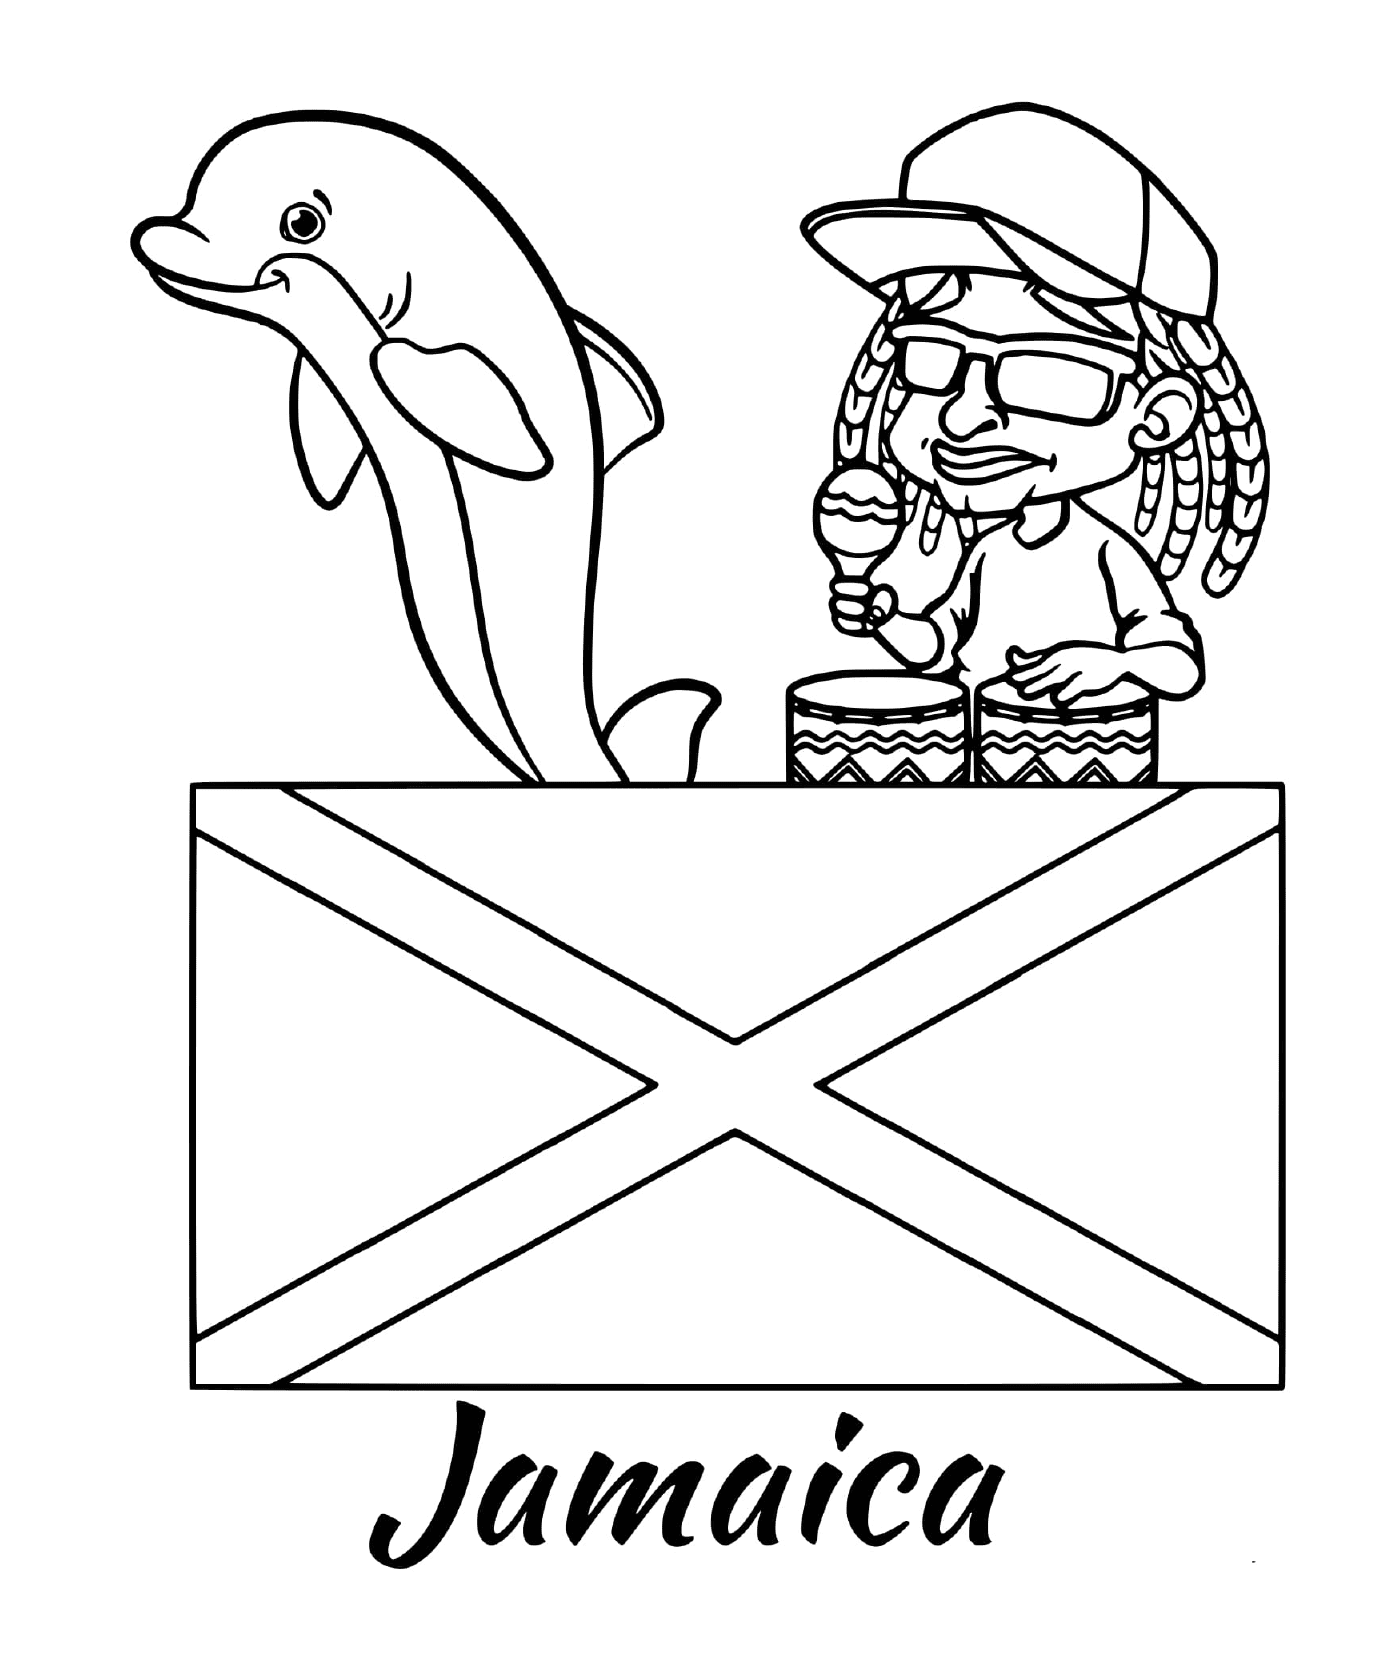  Bandera de Jamaica, reggae 